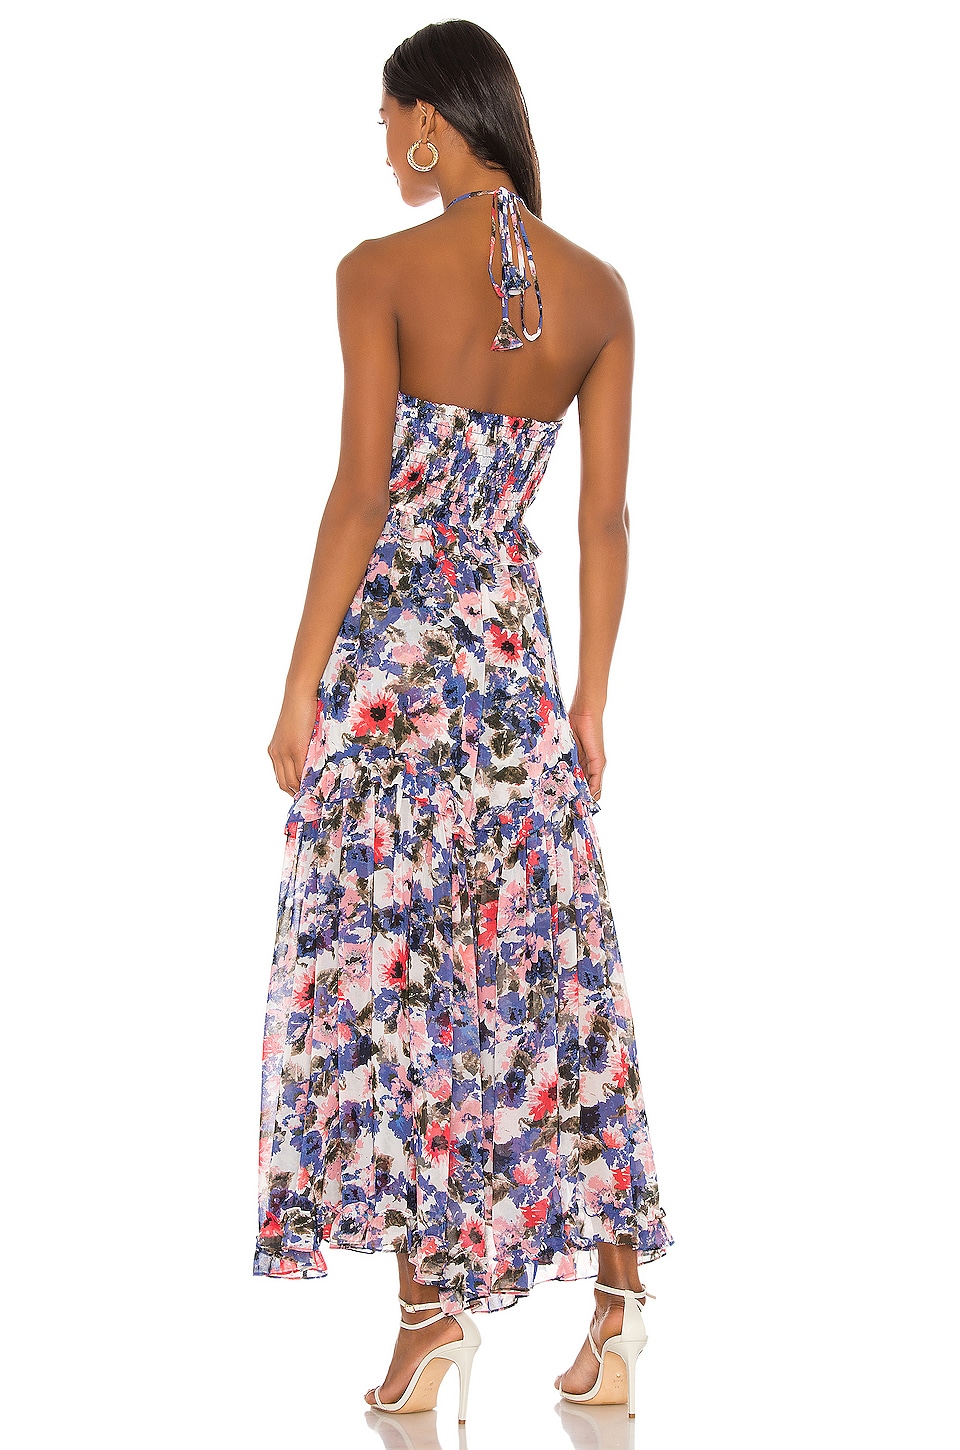 MISA Los Angeles X REVOLVE Dallin Dress in Tie Dye Floral | REVOLVE